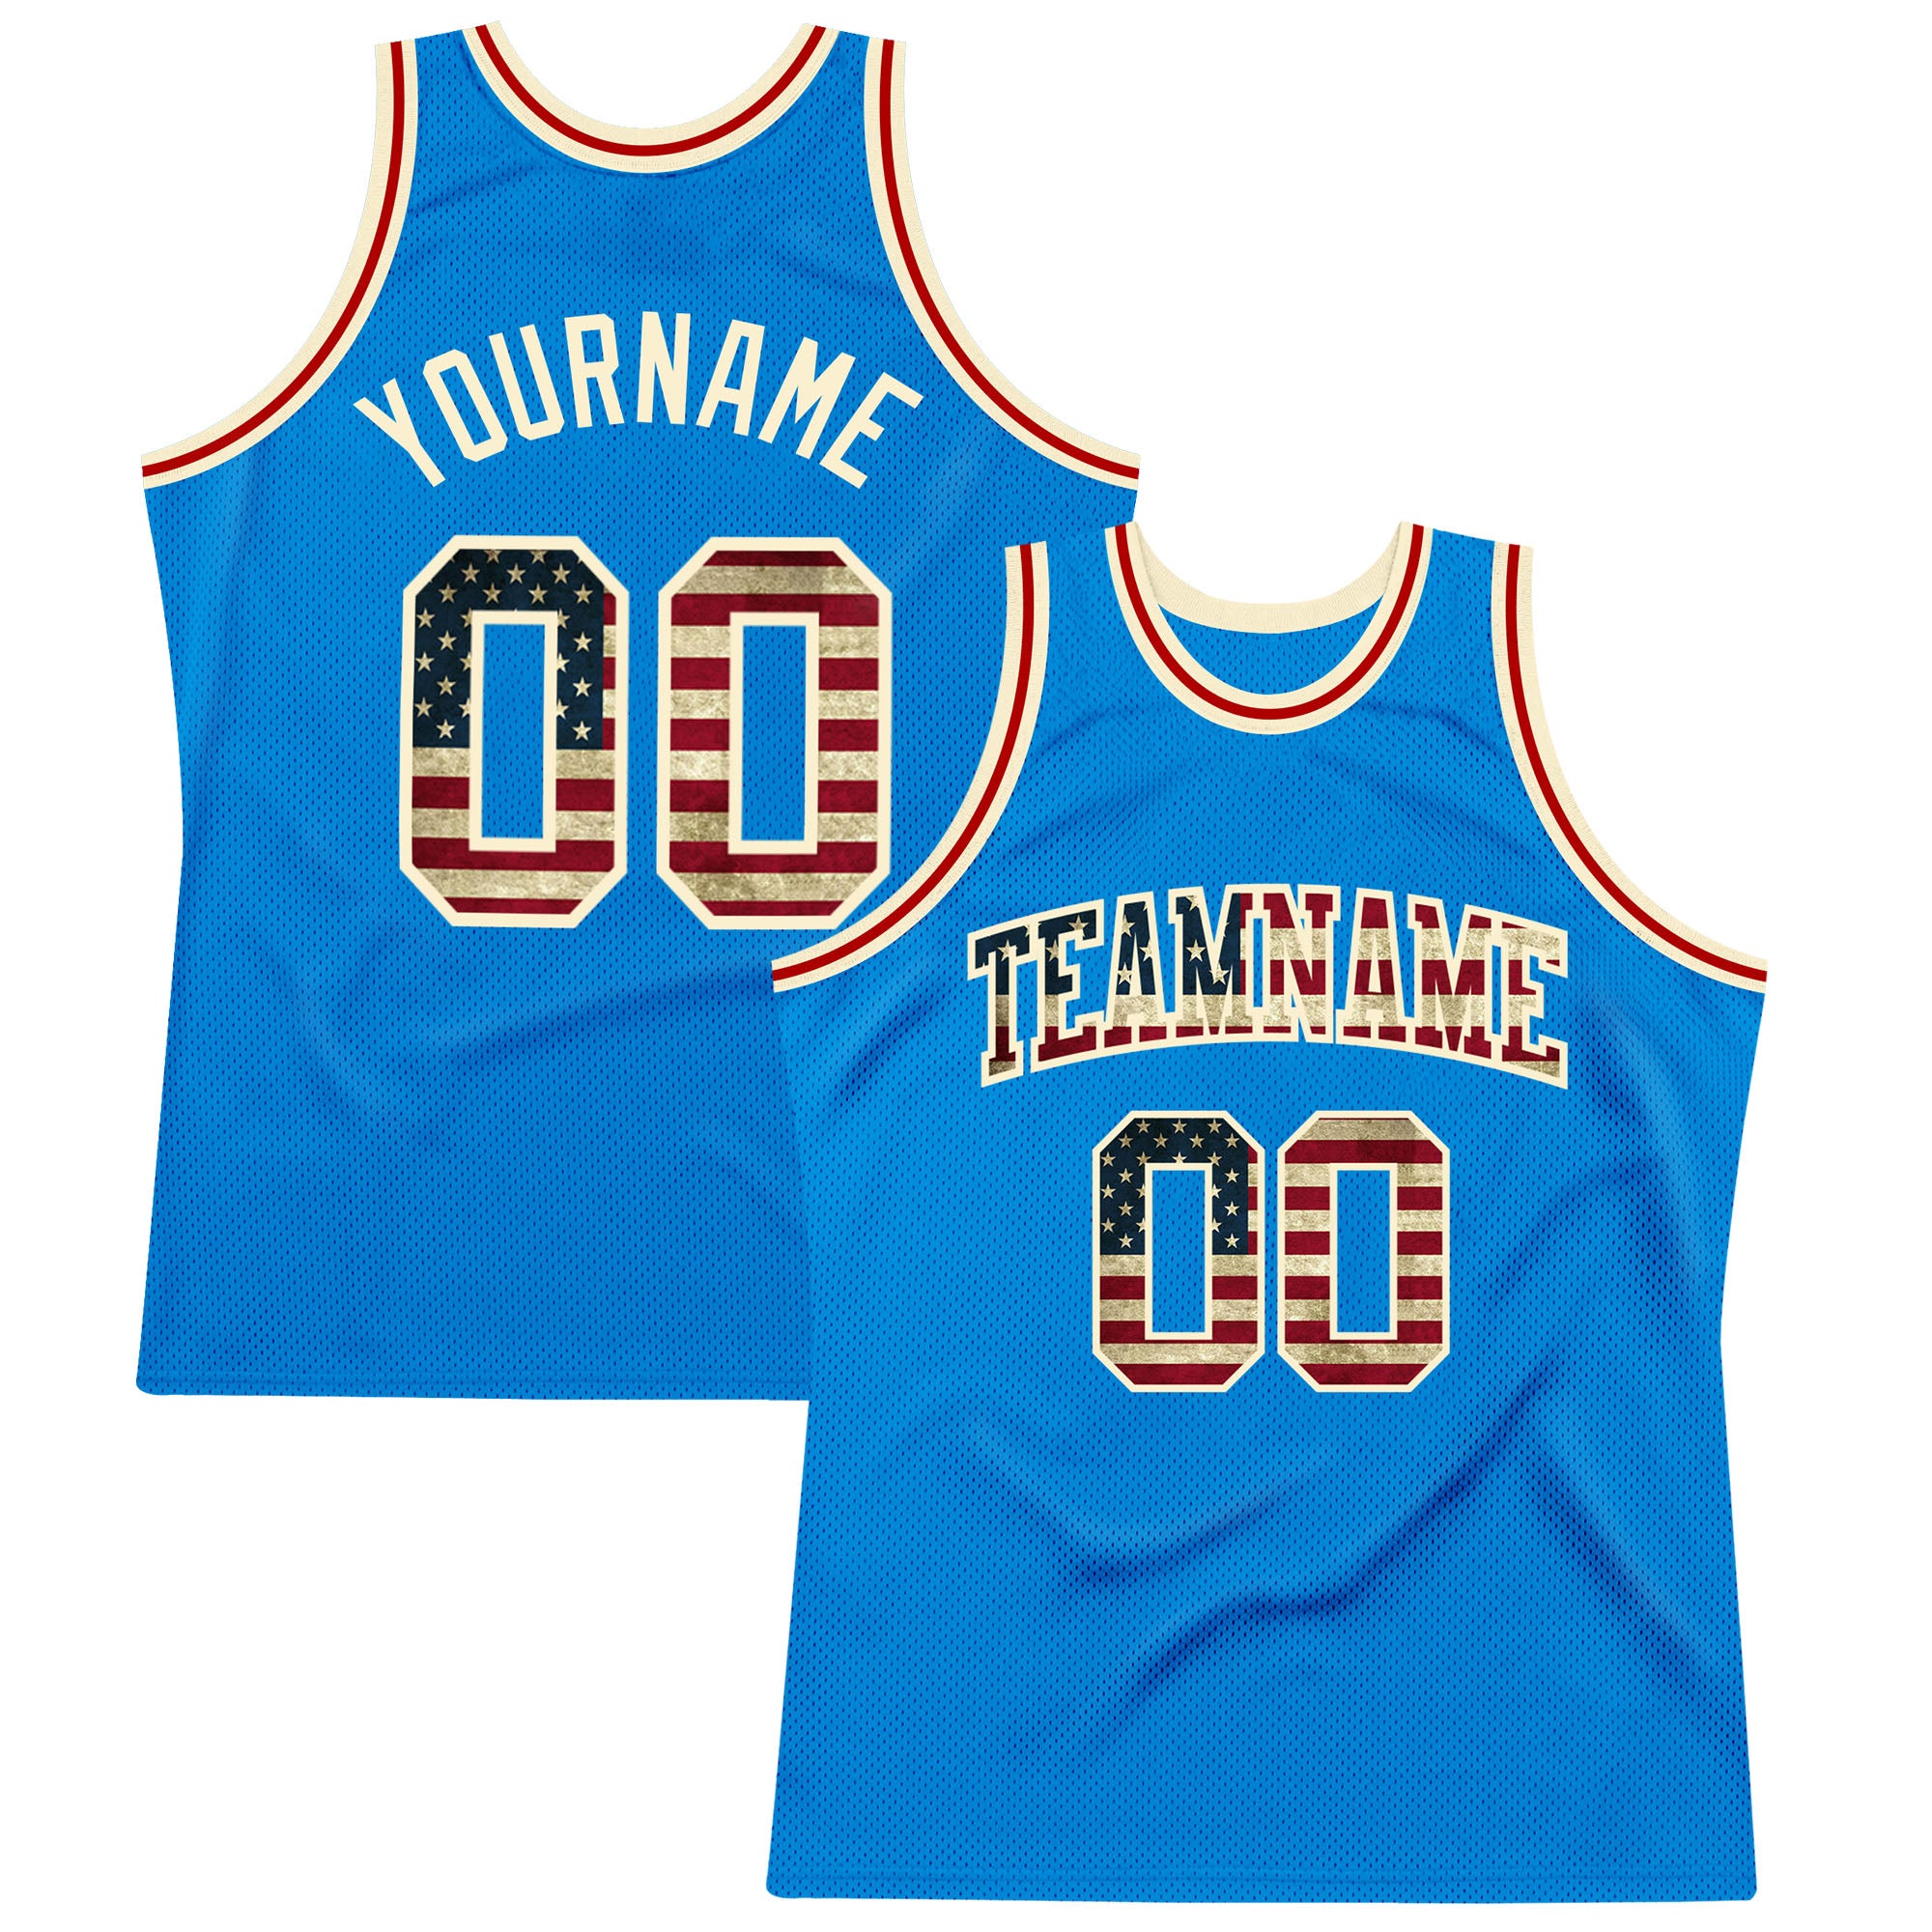 Customized USA Basketball Jersey